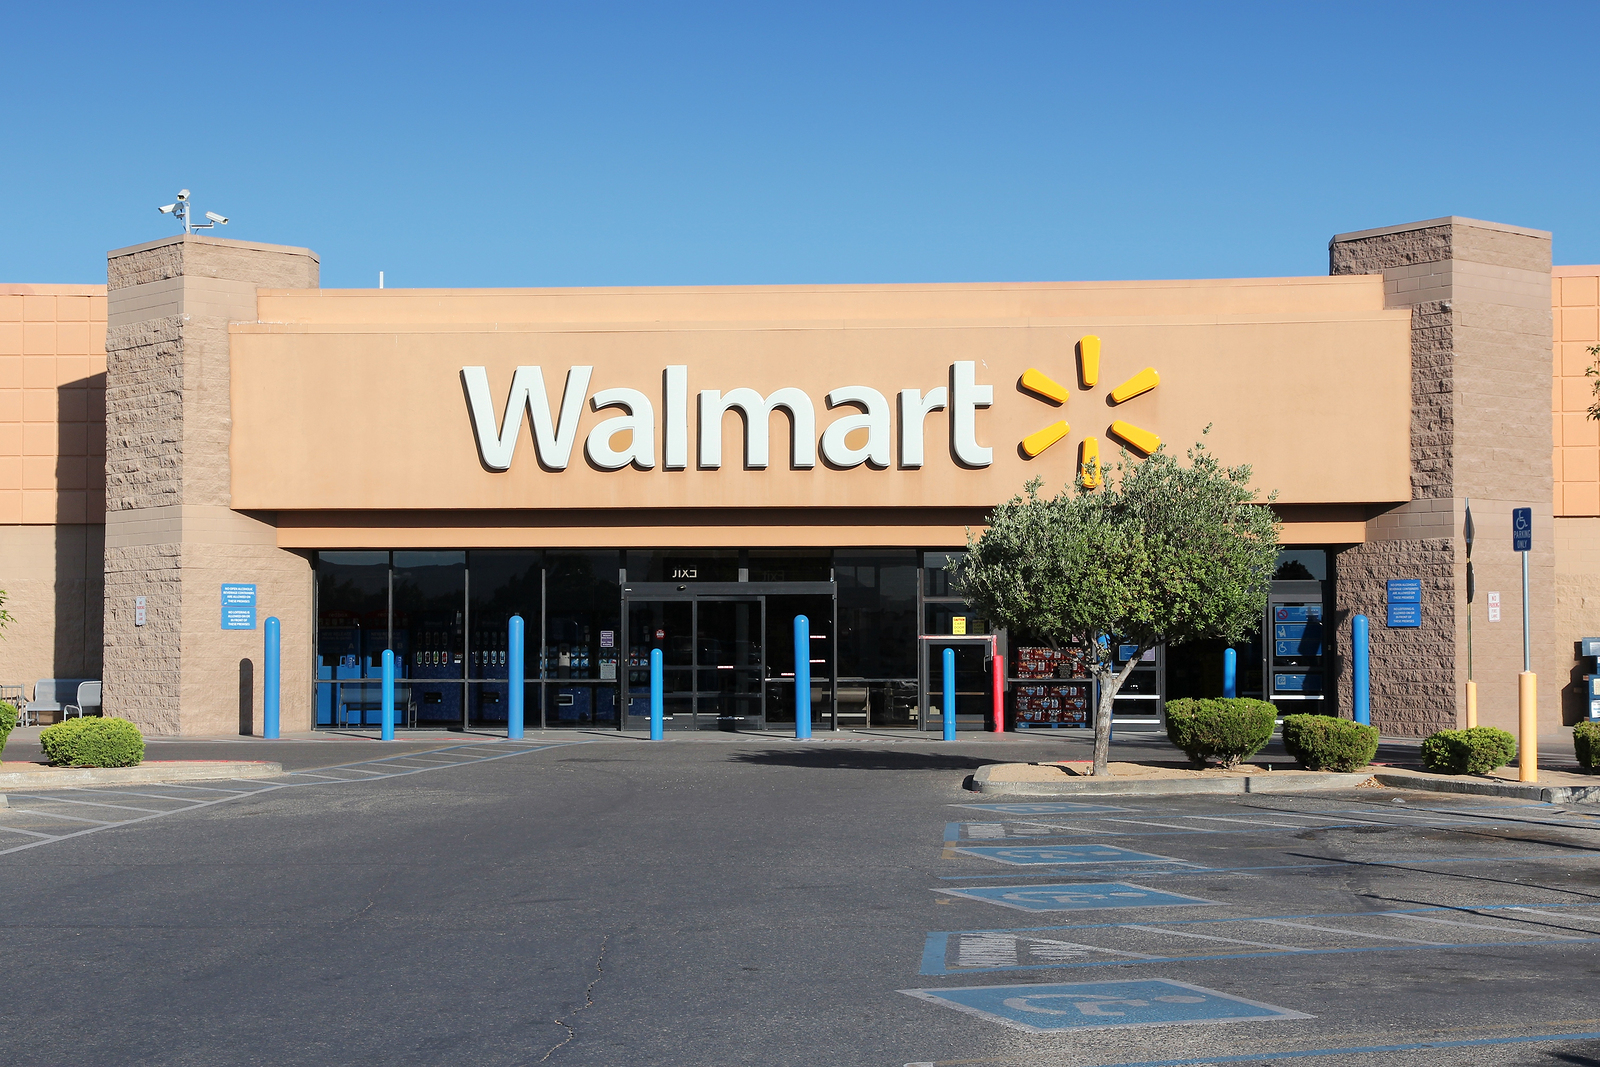 Walmart lança entrega gratuita para o dia seguinte nos EUA